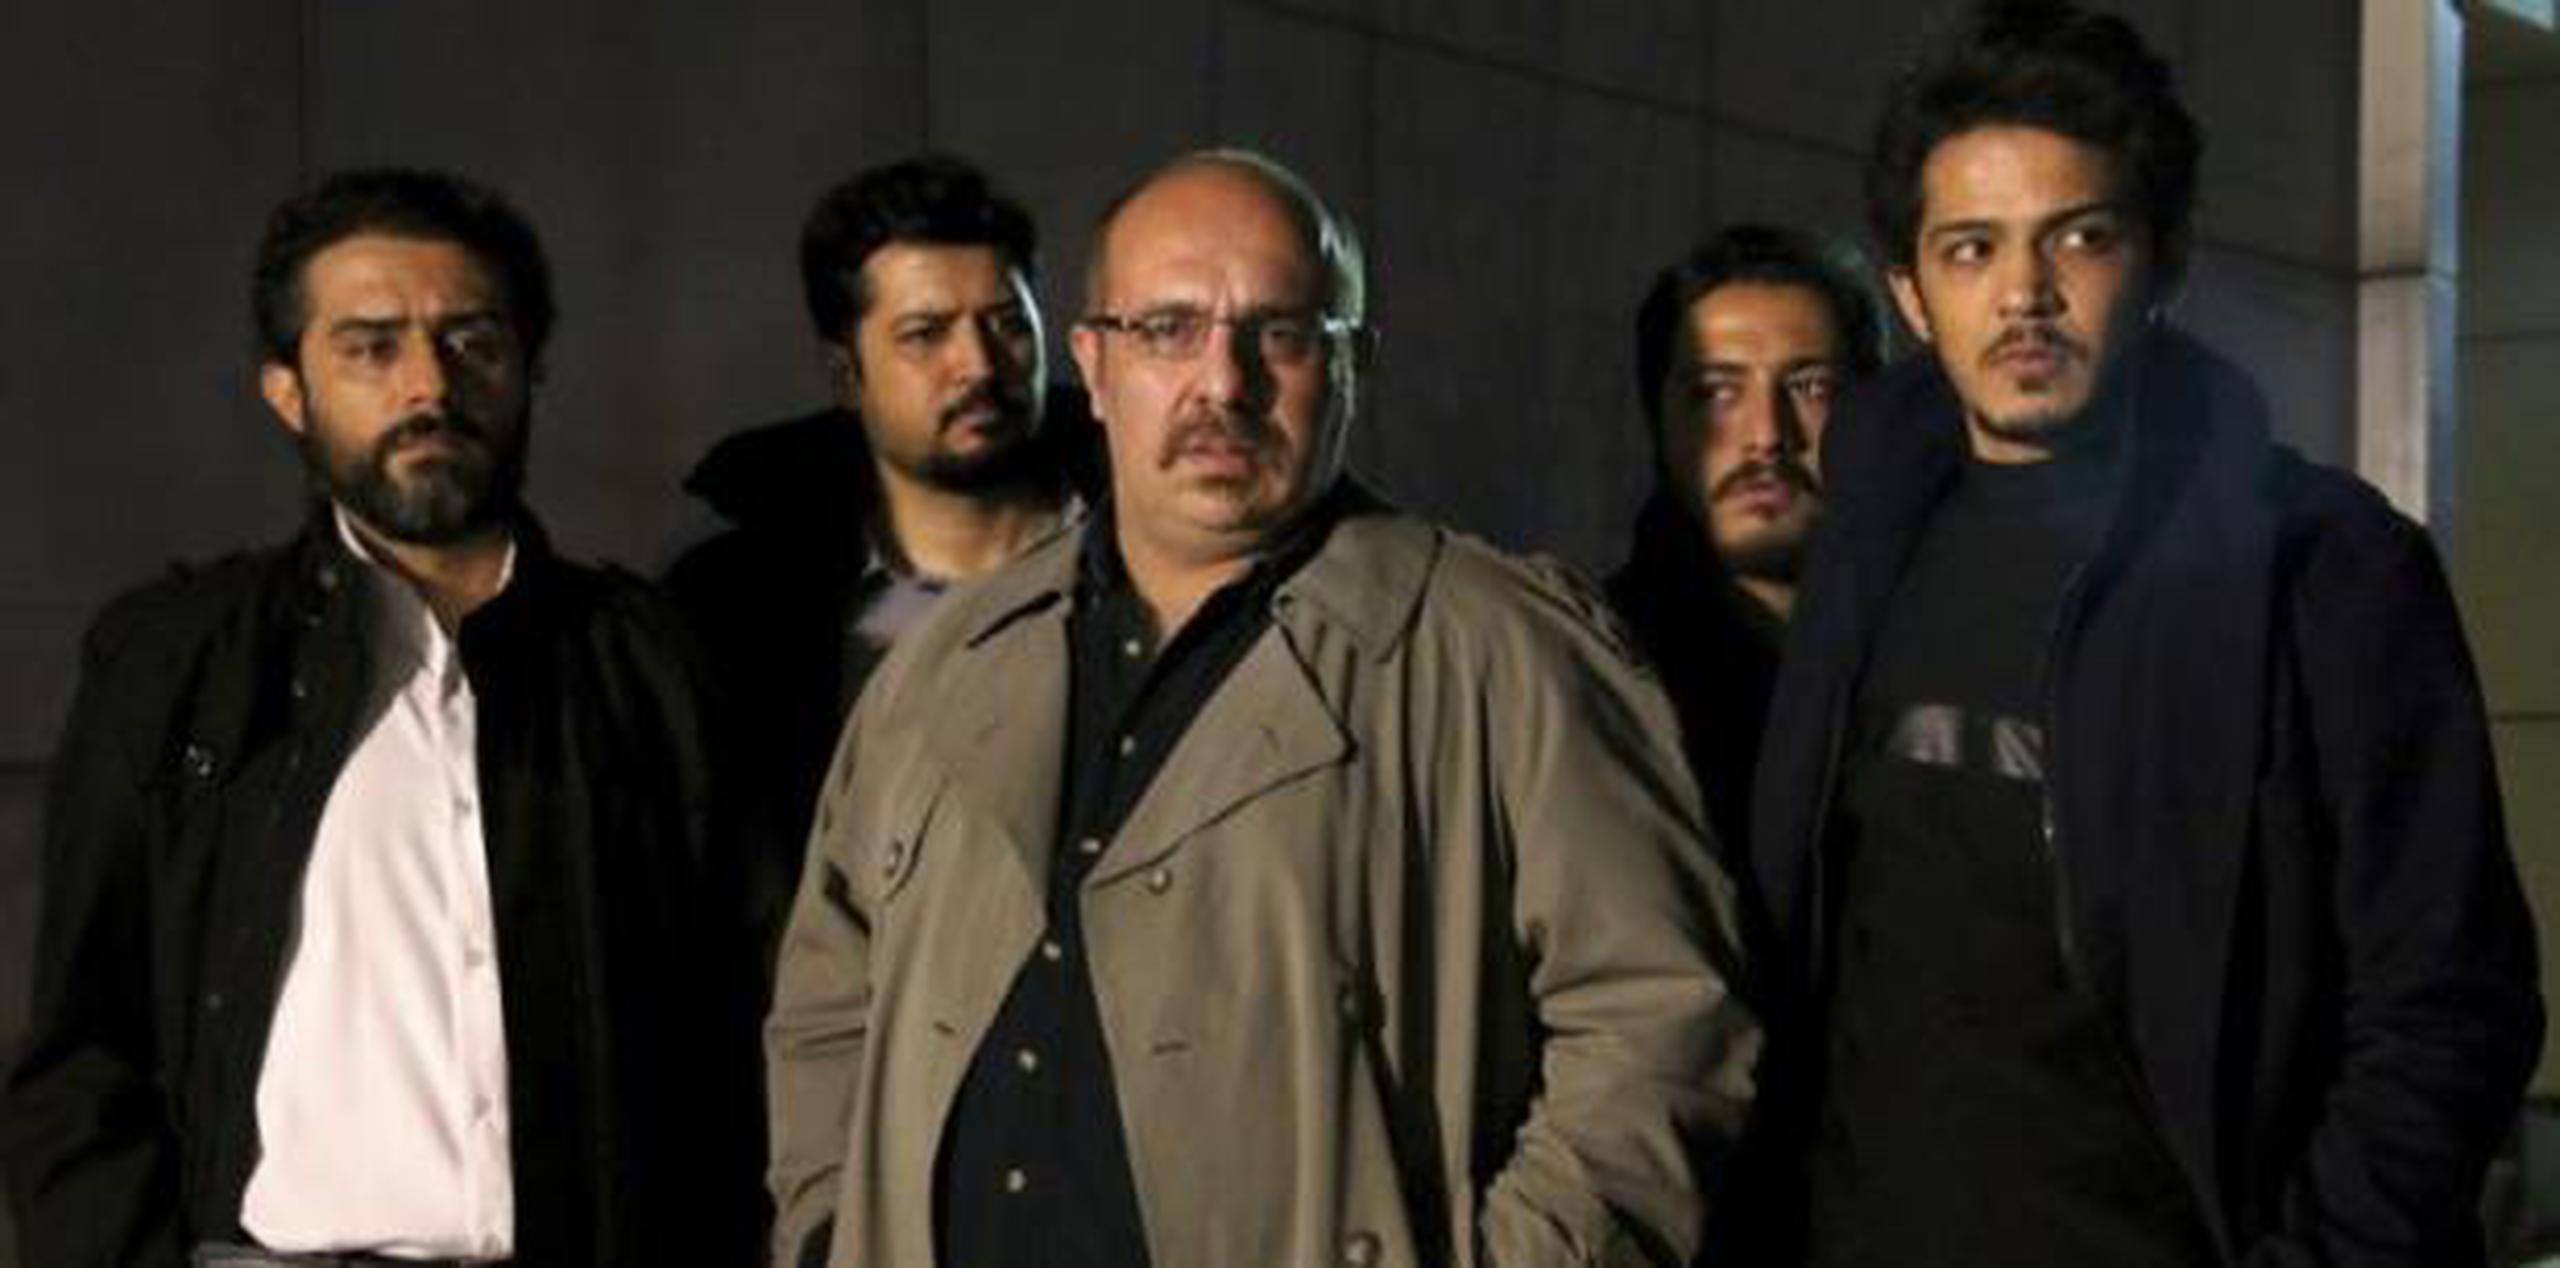 Rezaian fue arrestado el 22 de julio de 2014 en Teherán junto con su esposa, la reportera Yeganeh Salehi, a punta de pistola en su casa en medio de la noche. (AP)